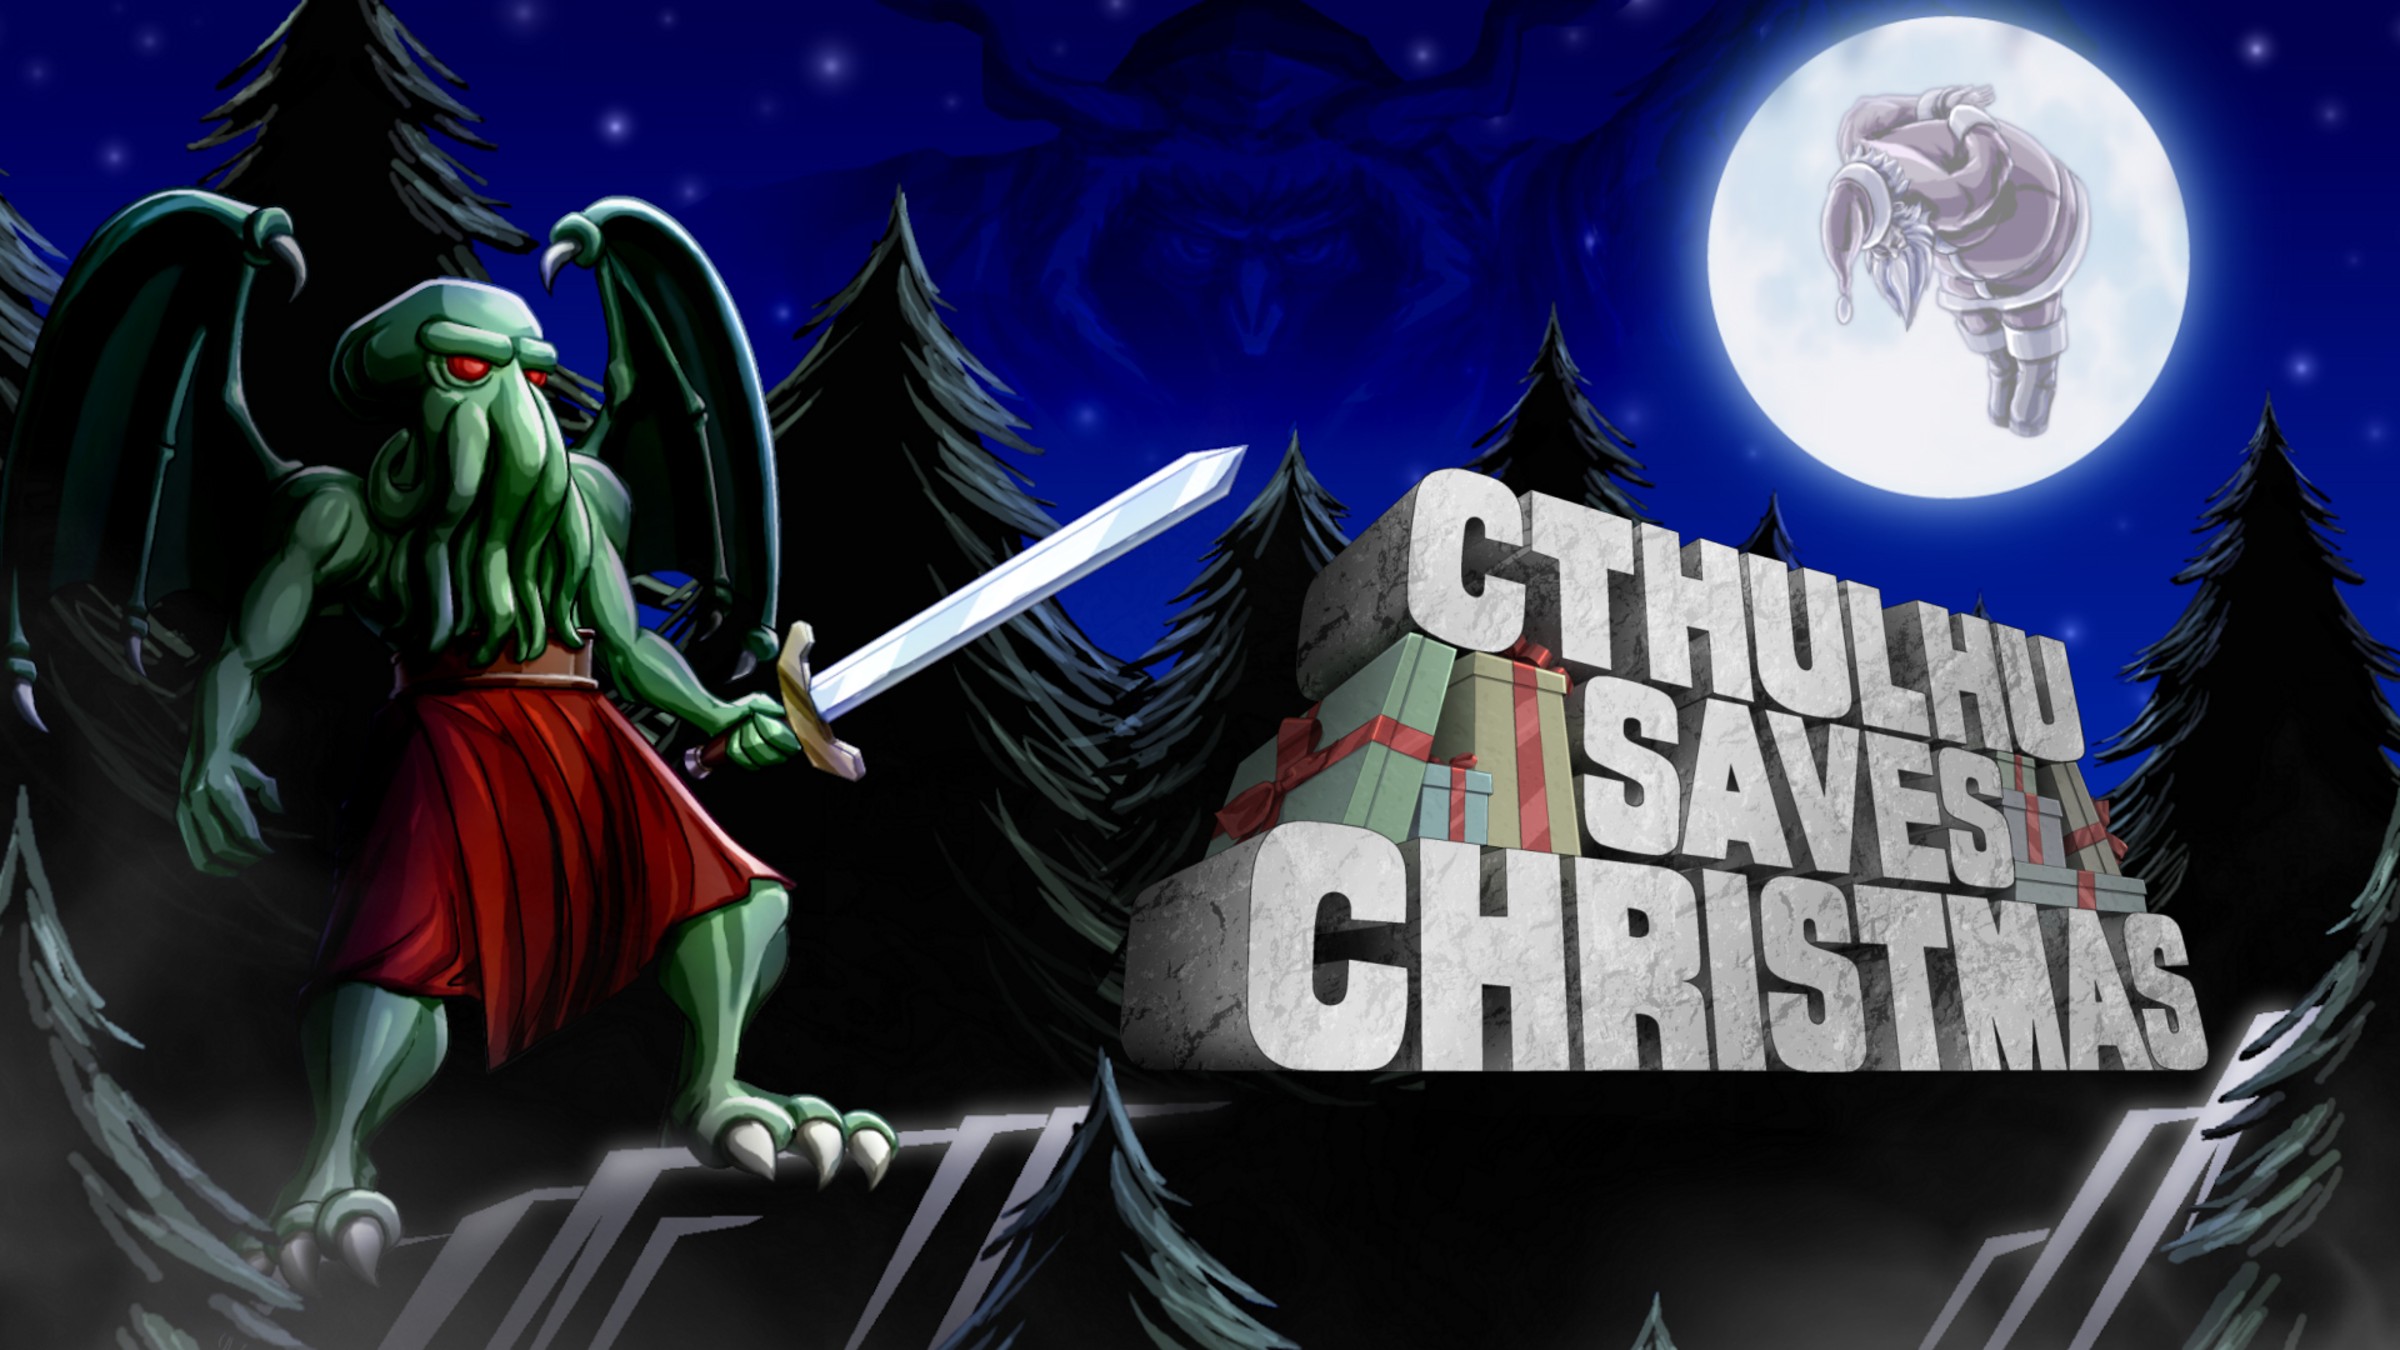 Cthulhu saves christmas